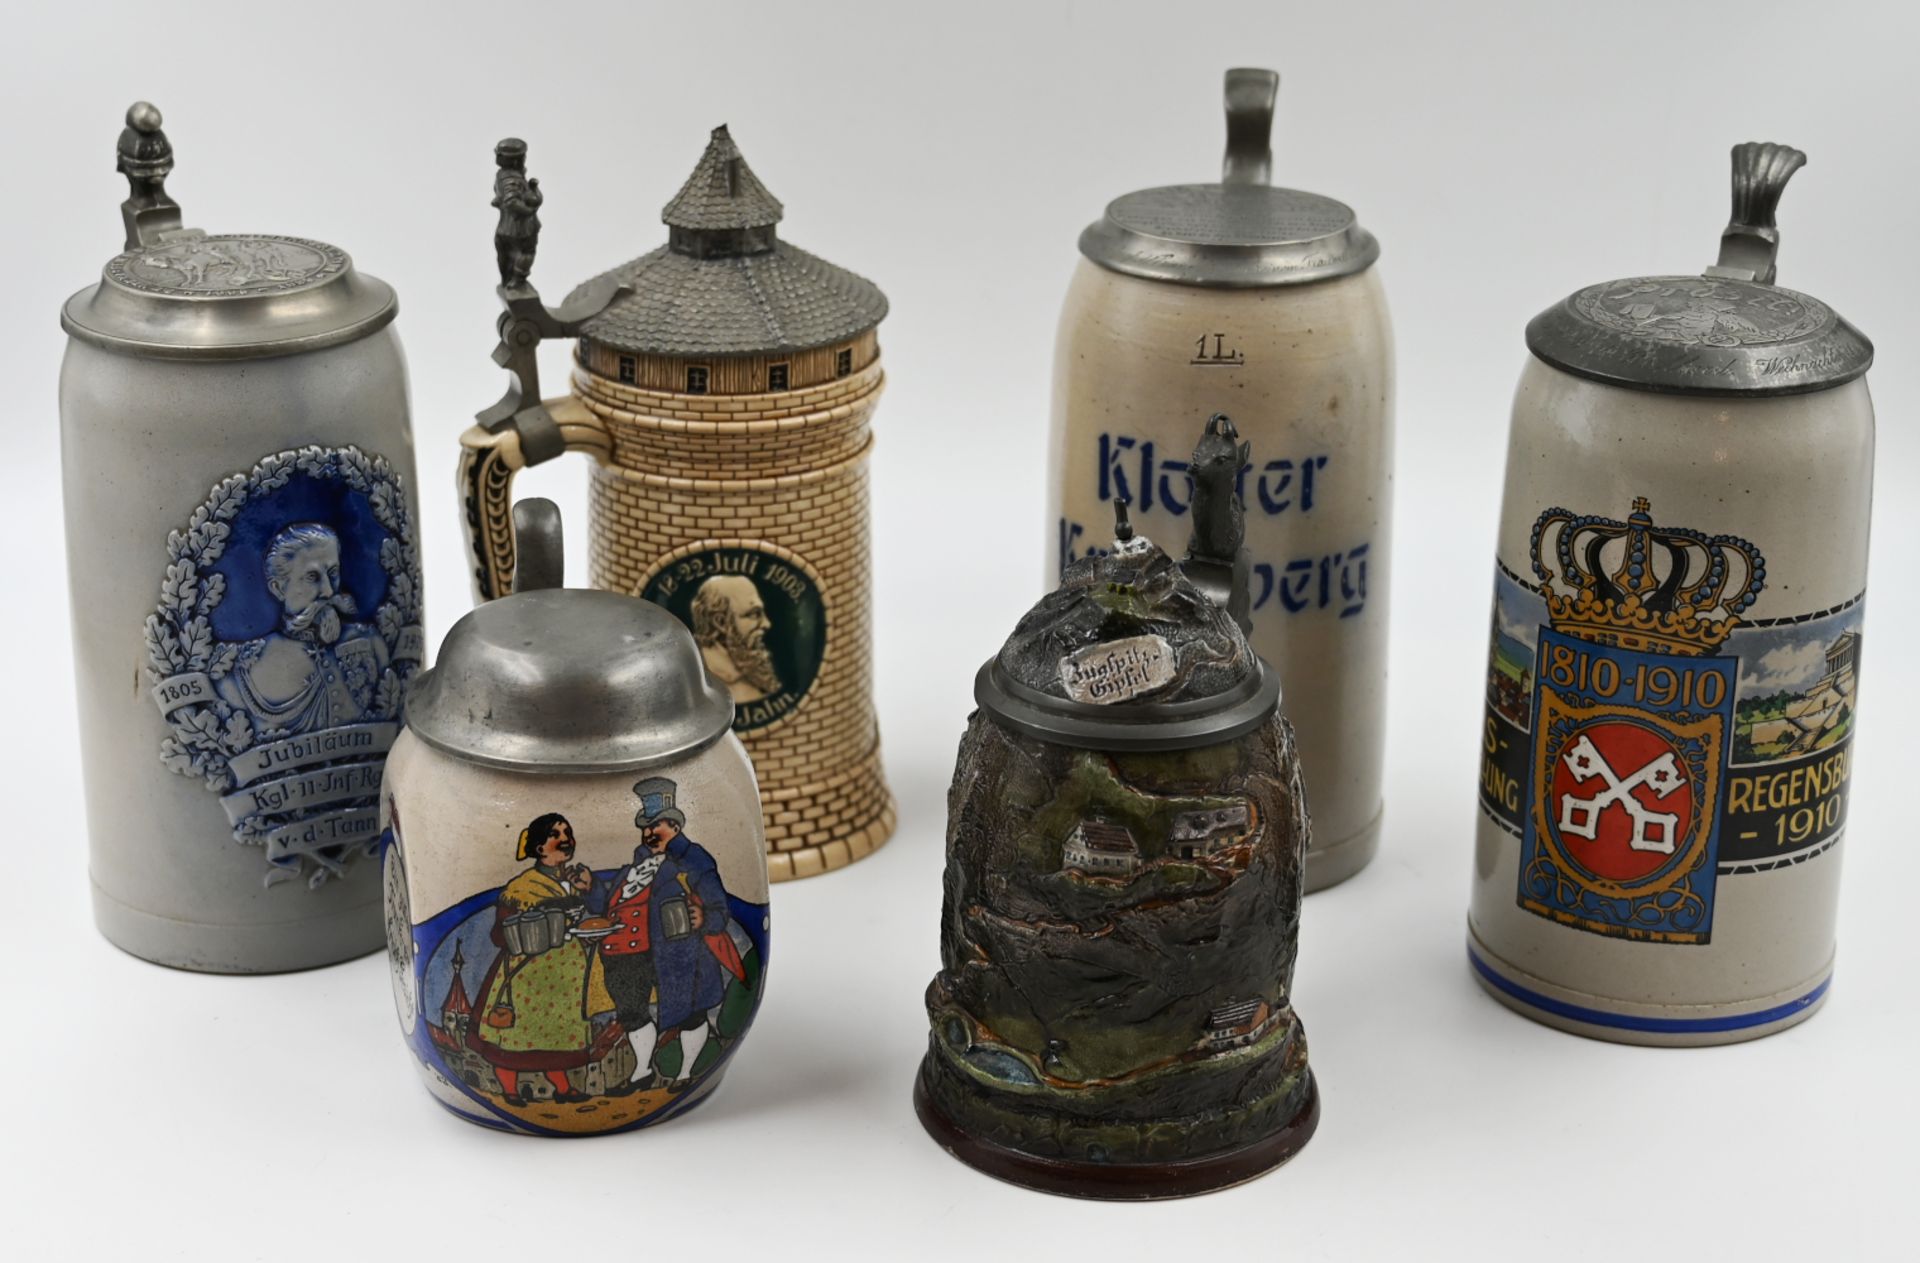 6 Bierkrüge z.T. Anfang 20. Jh. je mit Zinndeckel z.B. "Kreisausstellung Regensburg 1910"